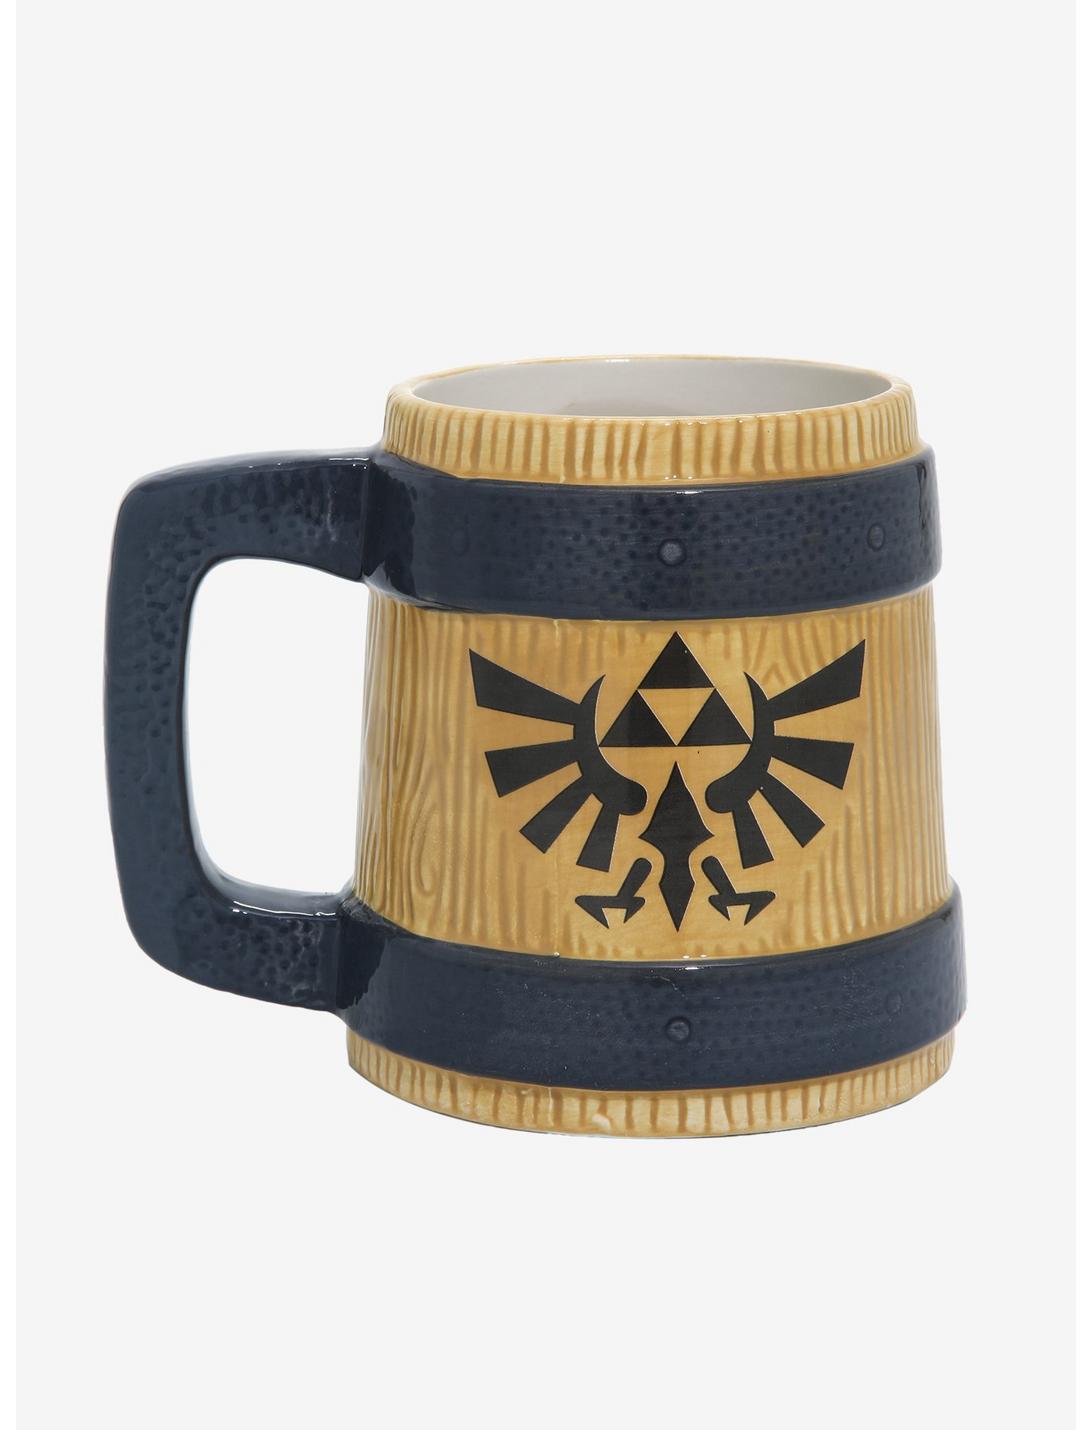 Nintendo The Legend of Zelda Royal Crest Mug, , hi-res